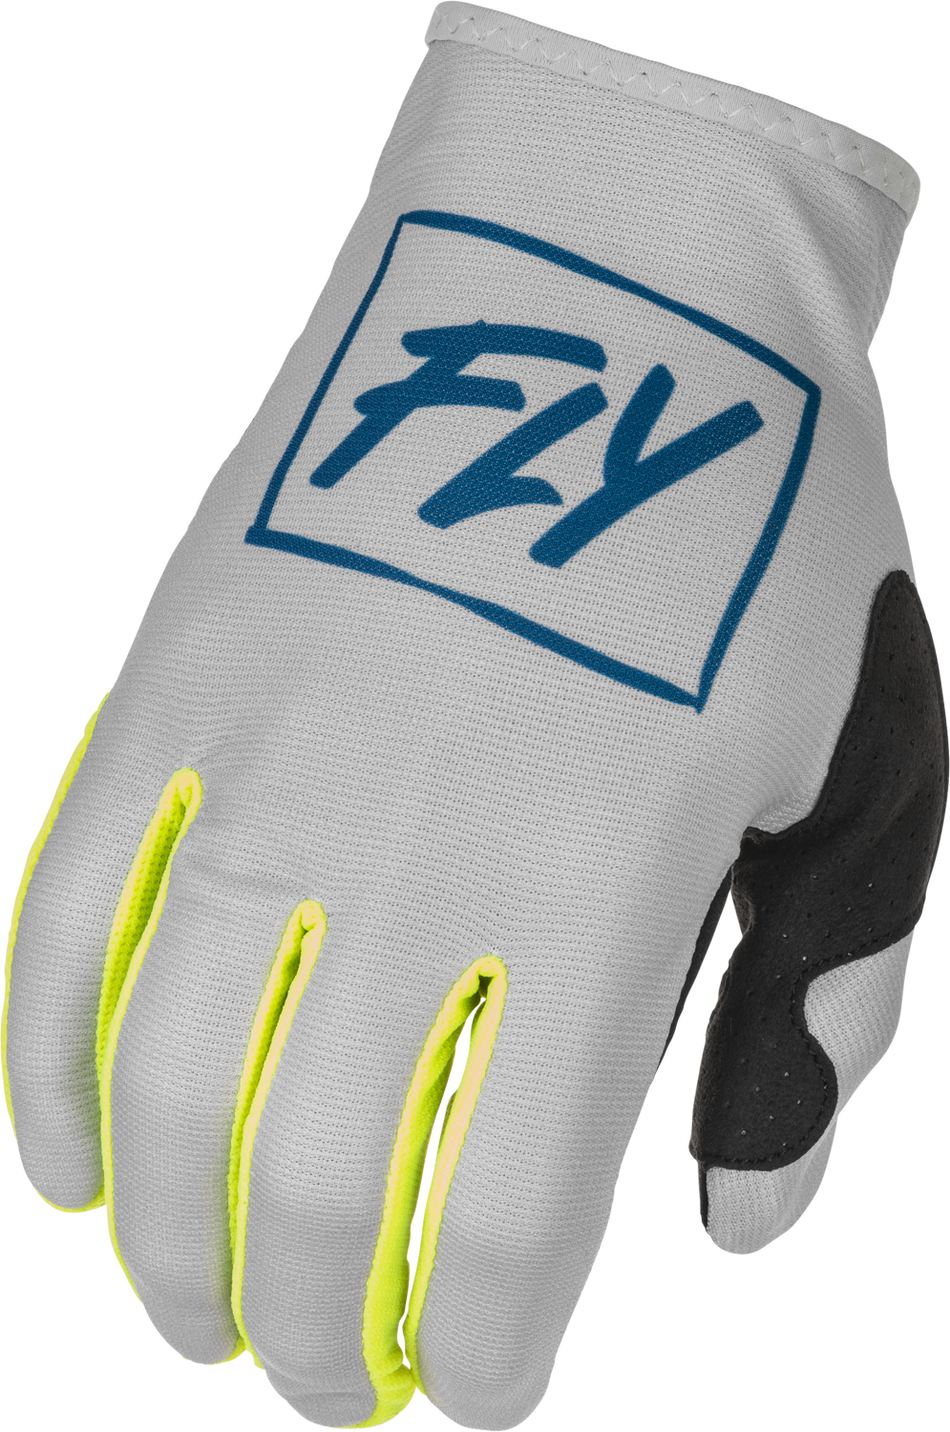 FLY RACING Youth Lite Gloves Grey/Teal/Hi-Vis Ym 375-711YM